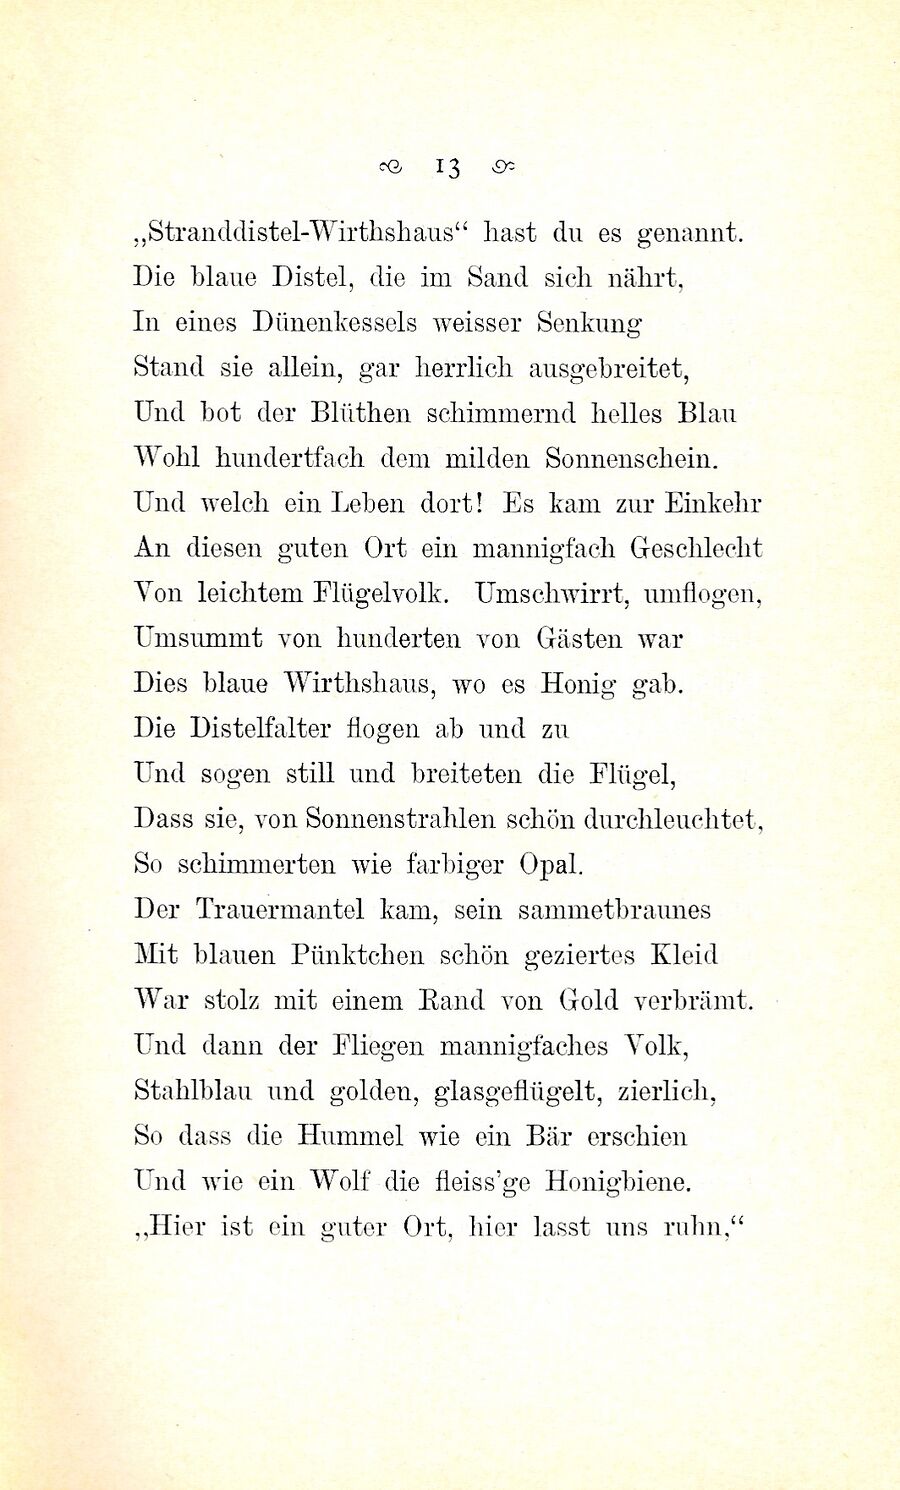 RH Gedicht Seidel Wirtshaus zur Stranddistel 1884 S 13